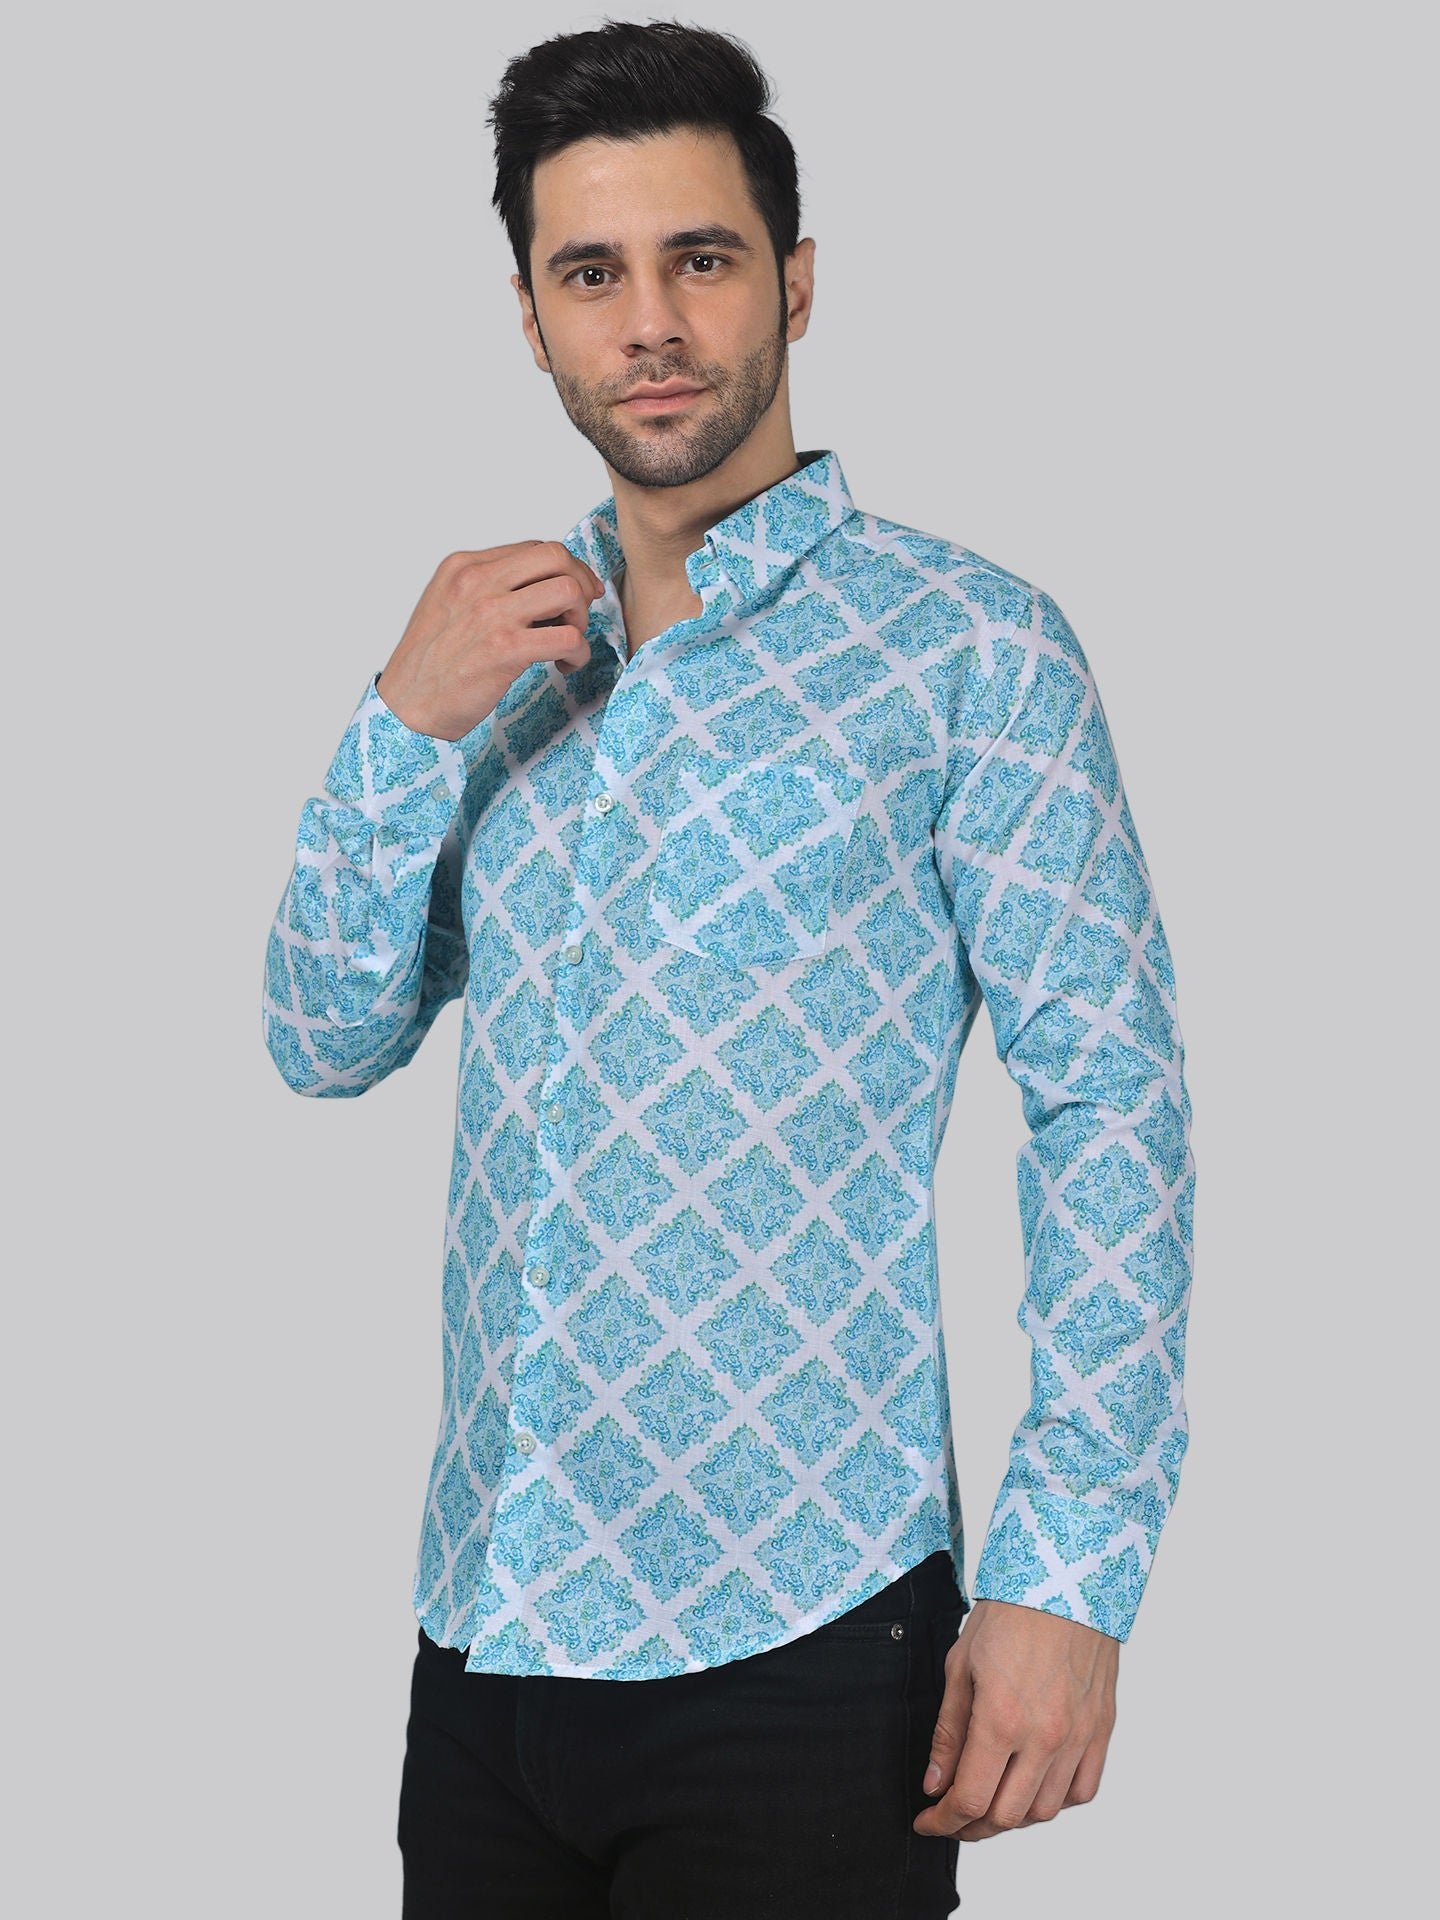 Elegant-edge Men's Printed Full Sleeve Casual Linen Shirt - TryBuy® USA🇺🇸